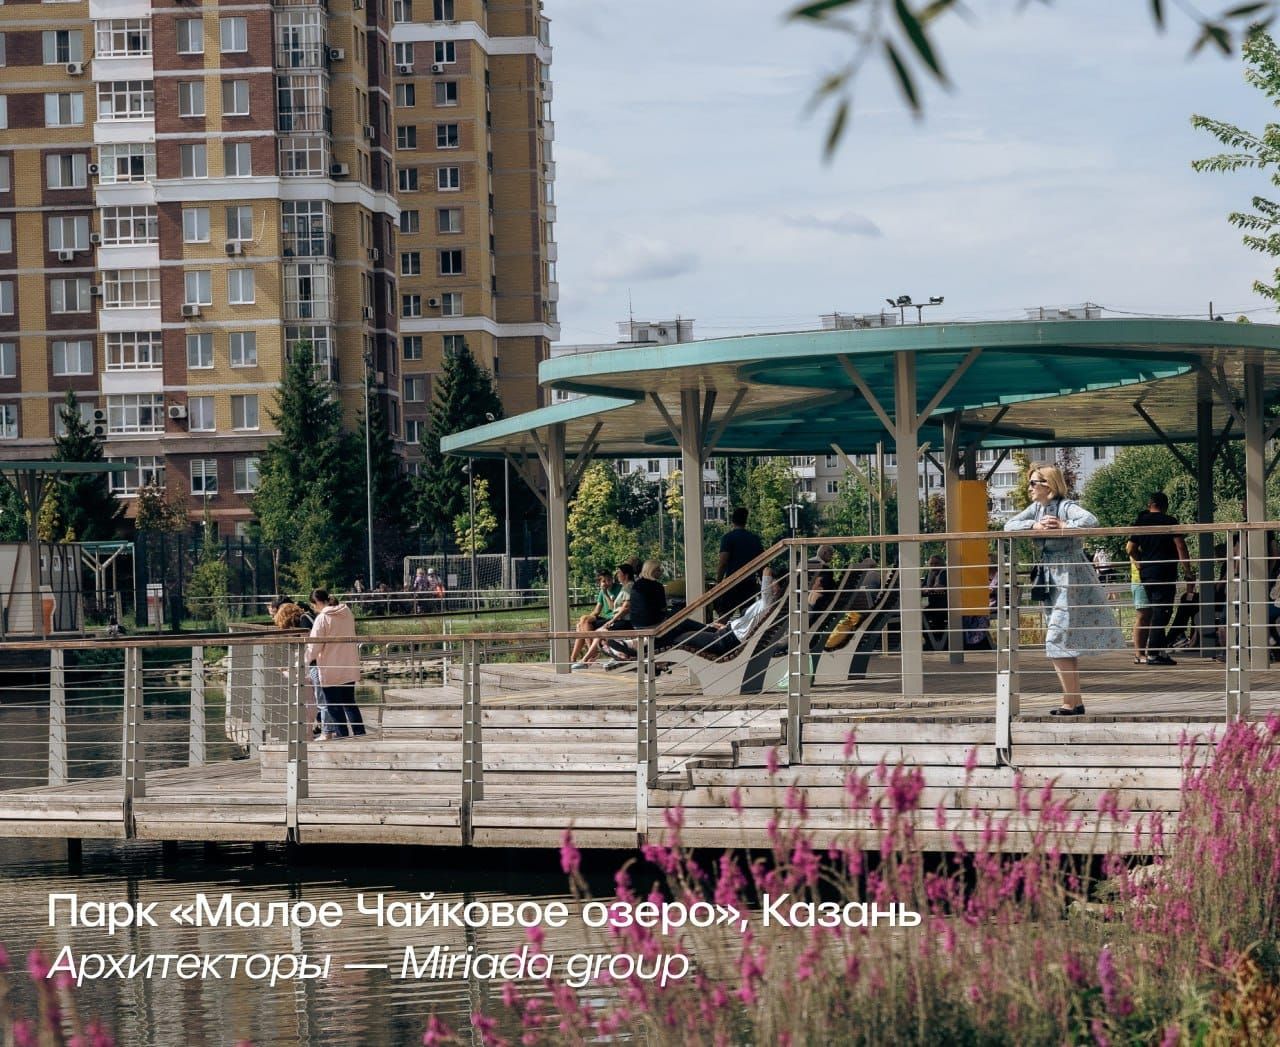 Парк по улице Кошевого в Лаишево оказался среди претендентов на победу в номинации «Парк года. Малые города»